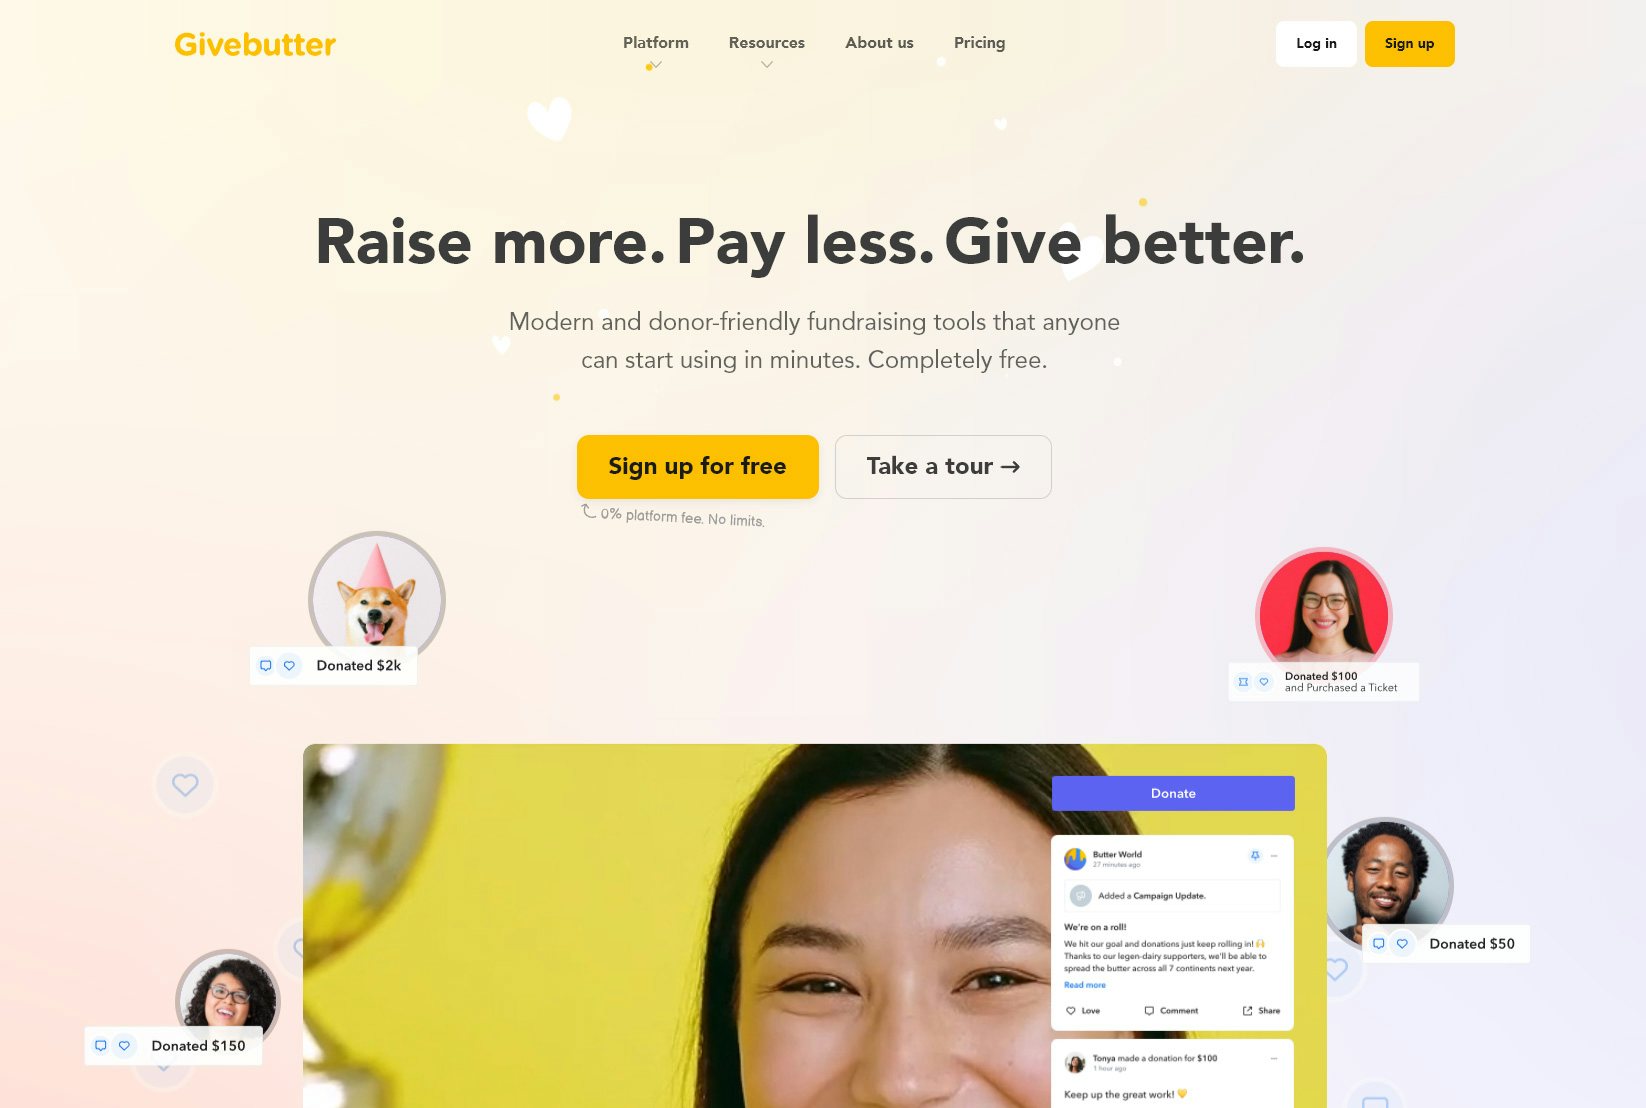 Givebutter's website